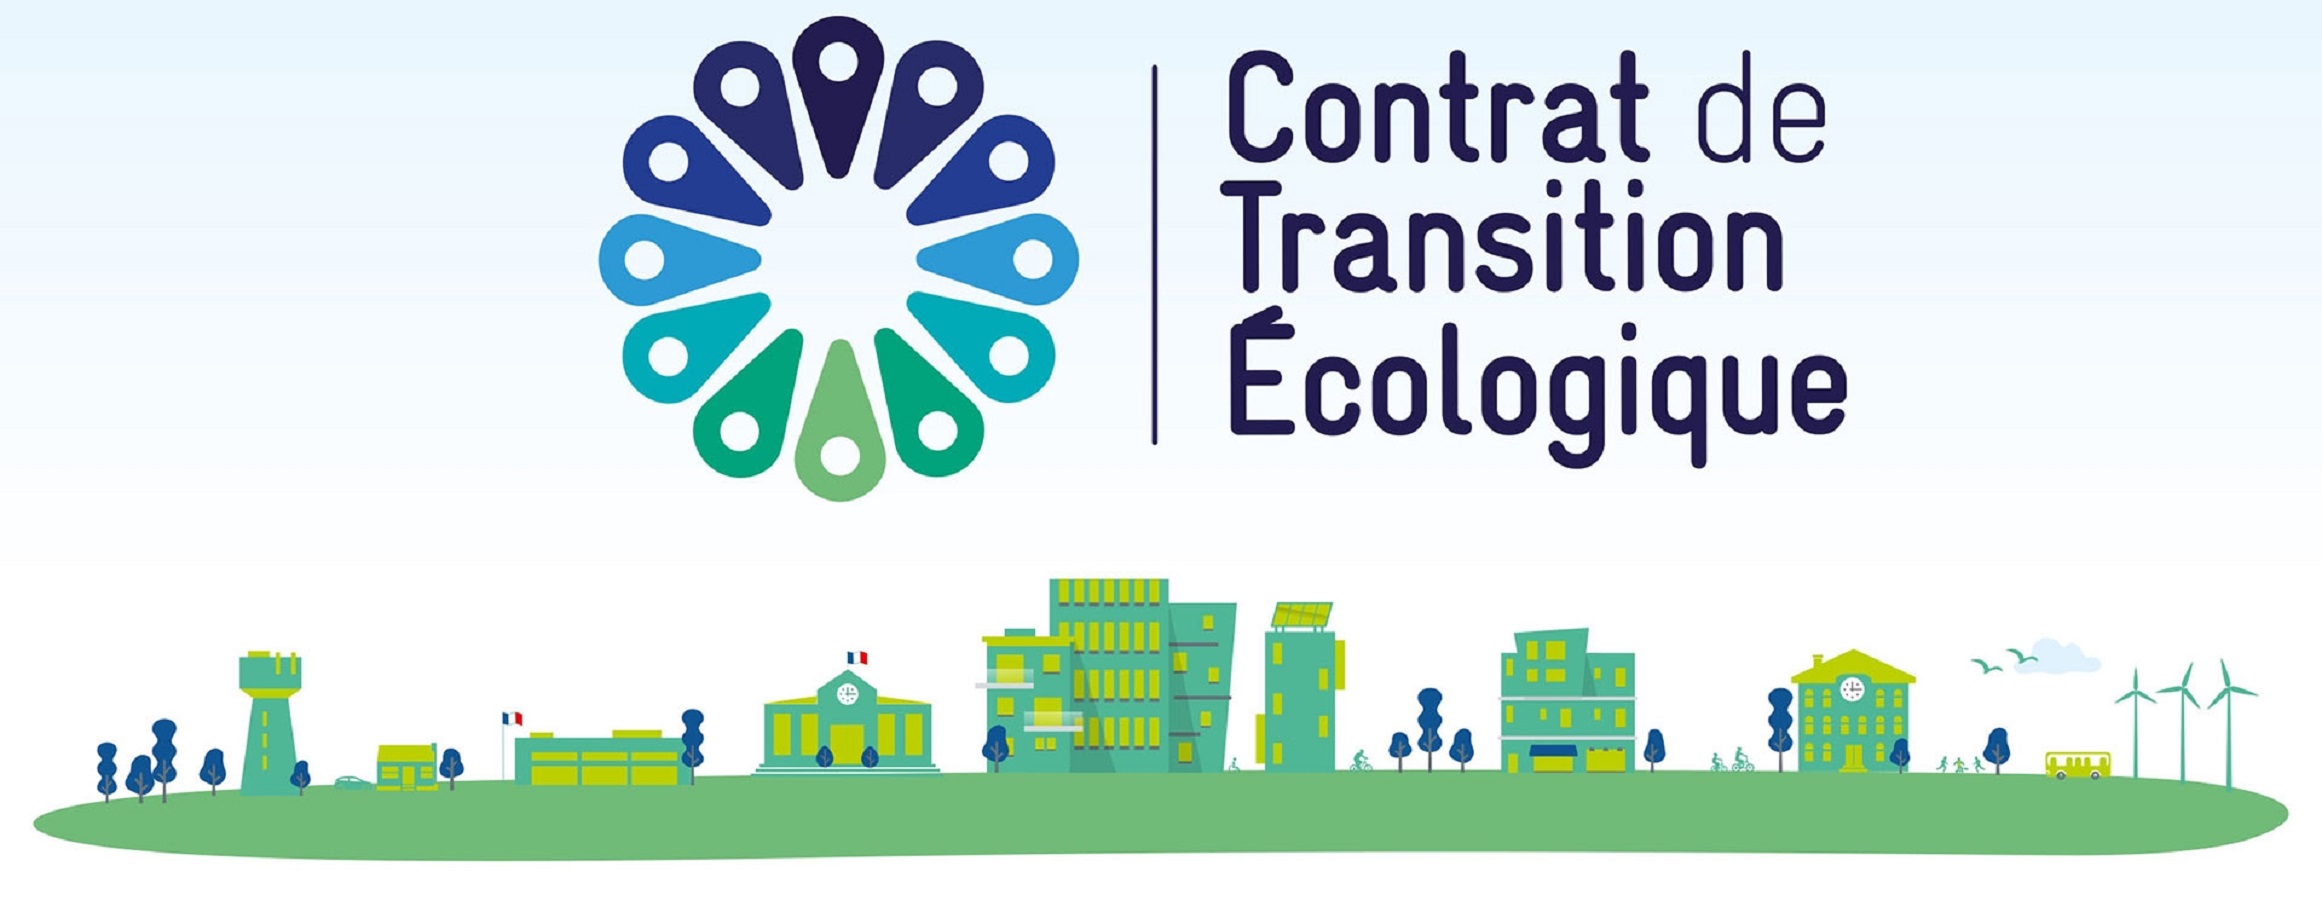 Le Contrat de Transition ecologique (CTE) du Pays de Brest